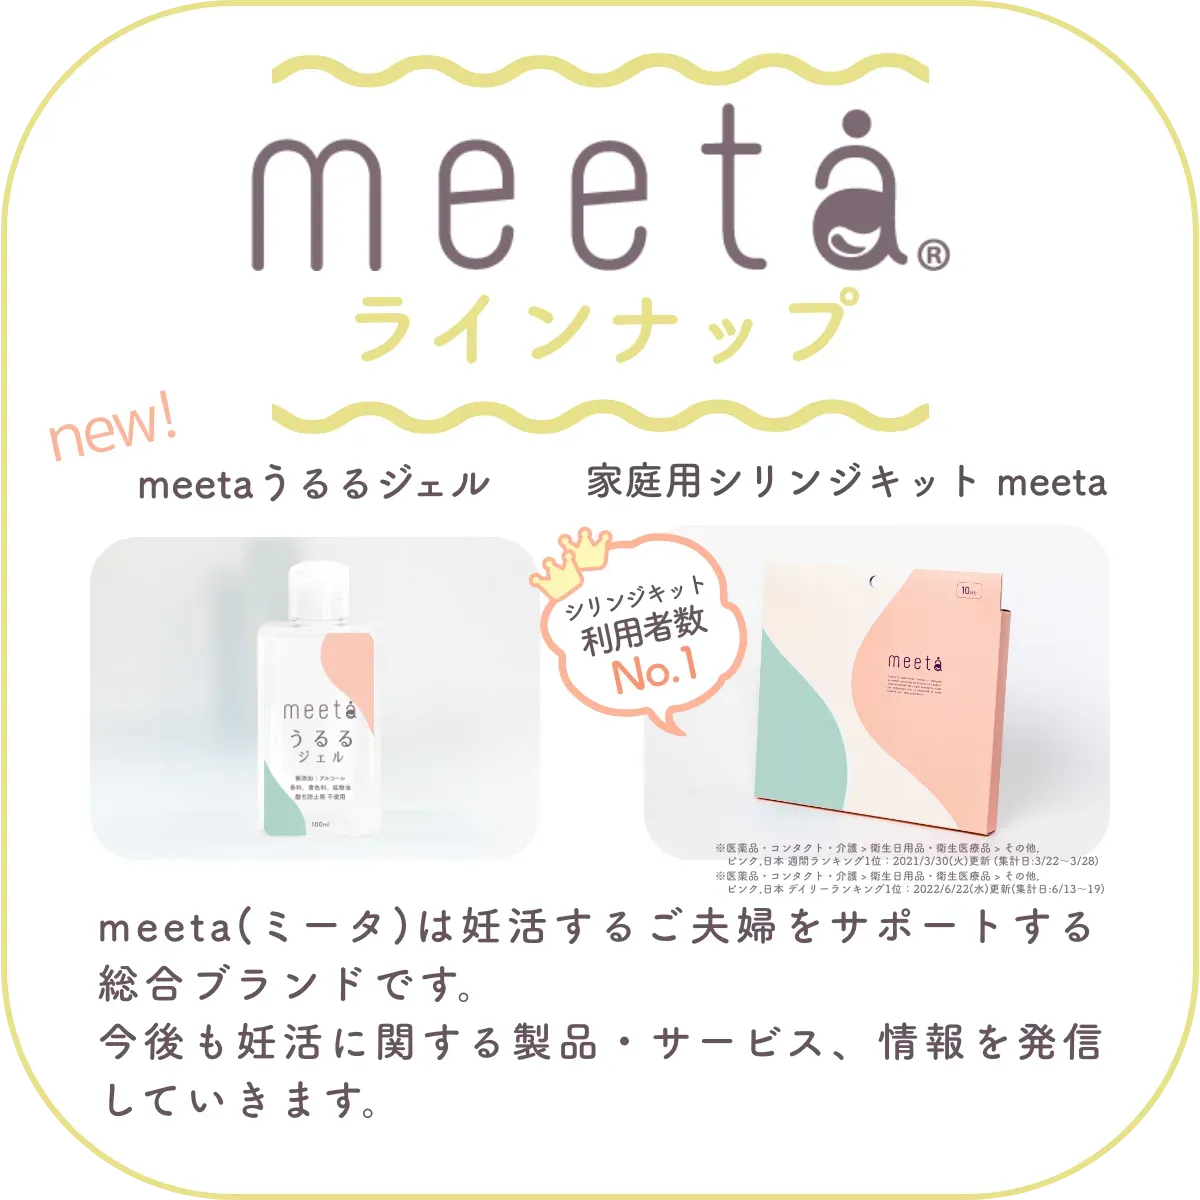 meetaラインナップ：meeta (ミータ)　うるるジェル、家庭用タイミング法キットmeeta　meeta（ミータ）は妊活するご夫婦をサポートする総合ブランドです。今後も妊活に関する製品・サービス、情報を発信していきます。